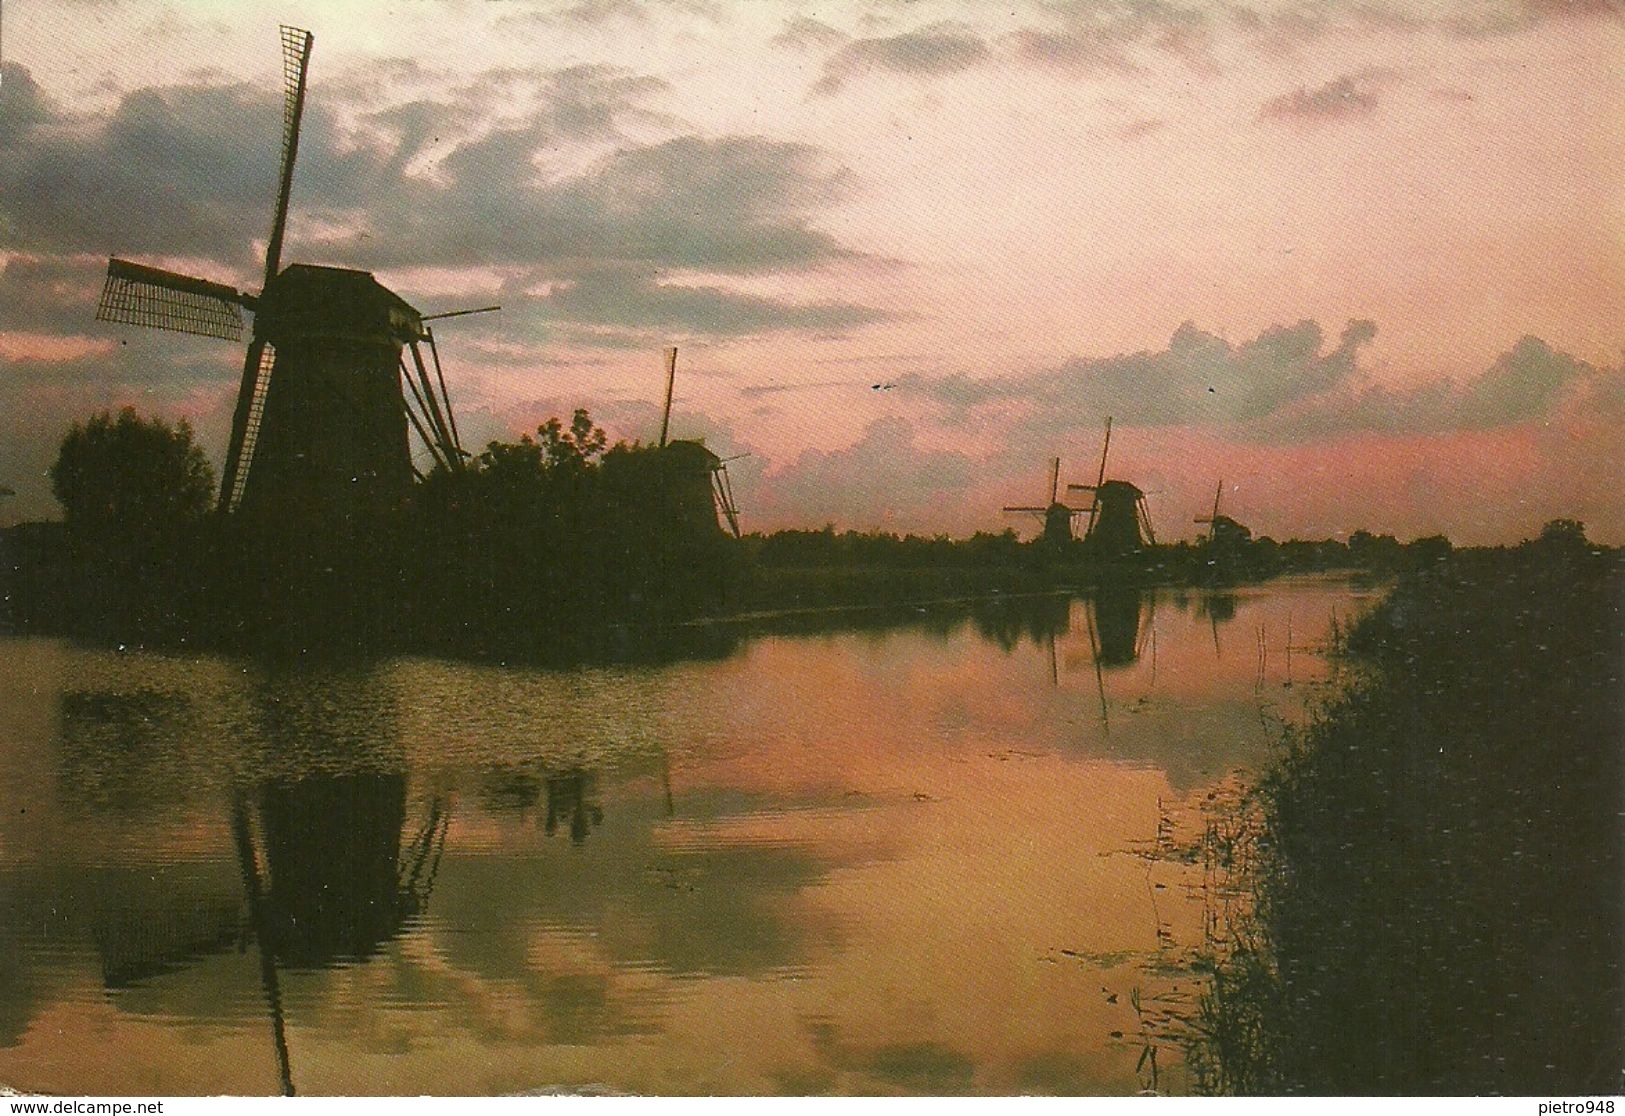 Olanda (Holland, Paesi Bassi) Poldermolens Van Het Kinderdijk-Complex Waterschap, "De Overwaard" By Night - Kinderdijk